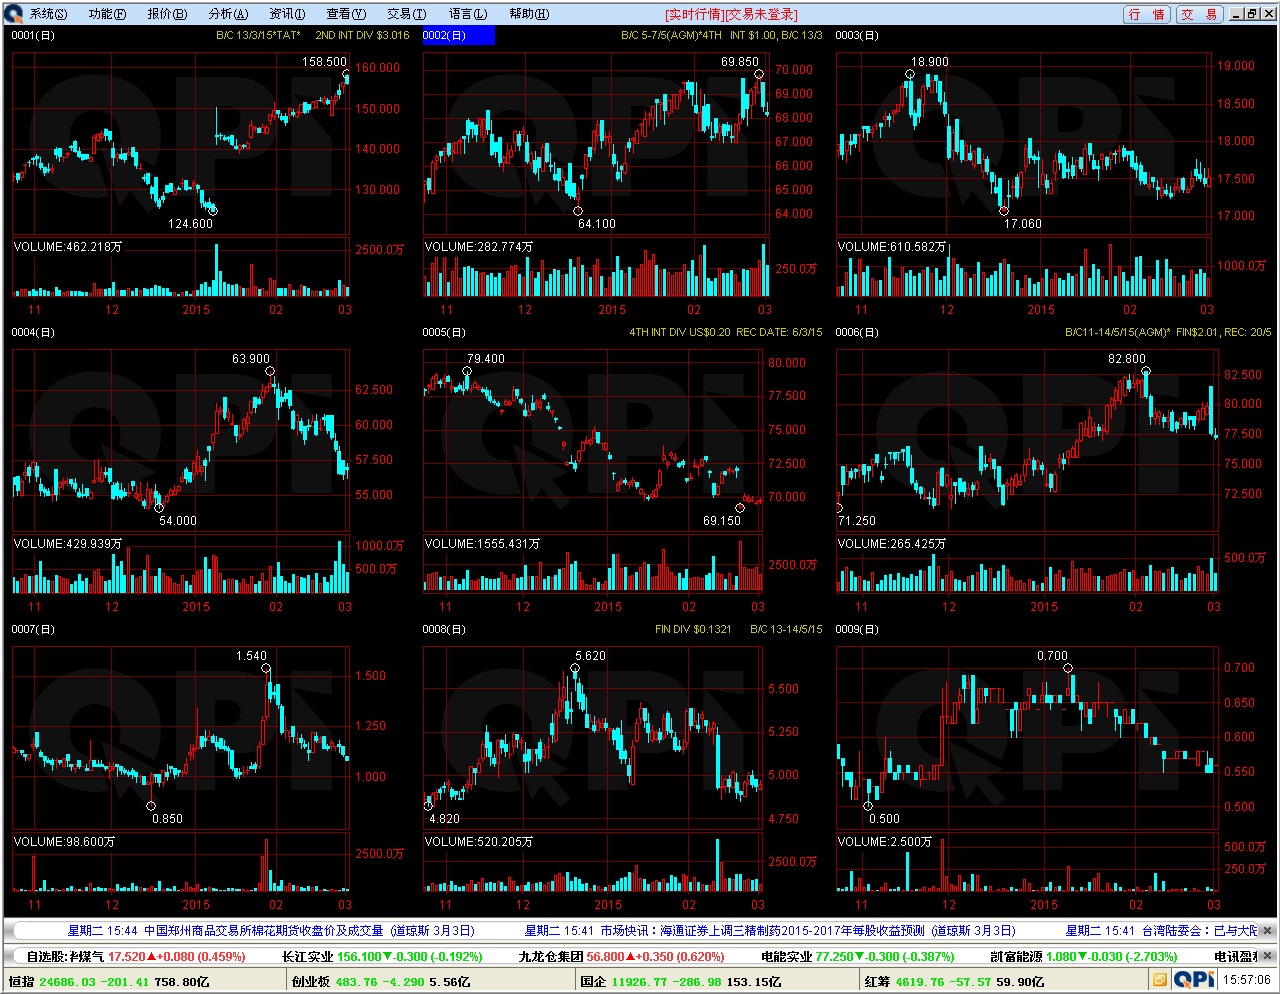 6.2 多 股 同 列 多 股 同 列 可 同 时 显 示 同 周 期 下 多 只 证 券, 每 个 子 图 显 示 一 只 证 券 於